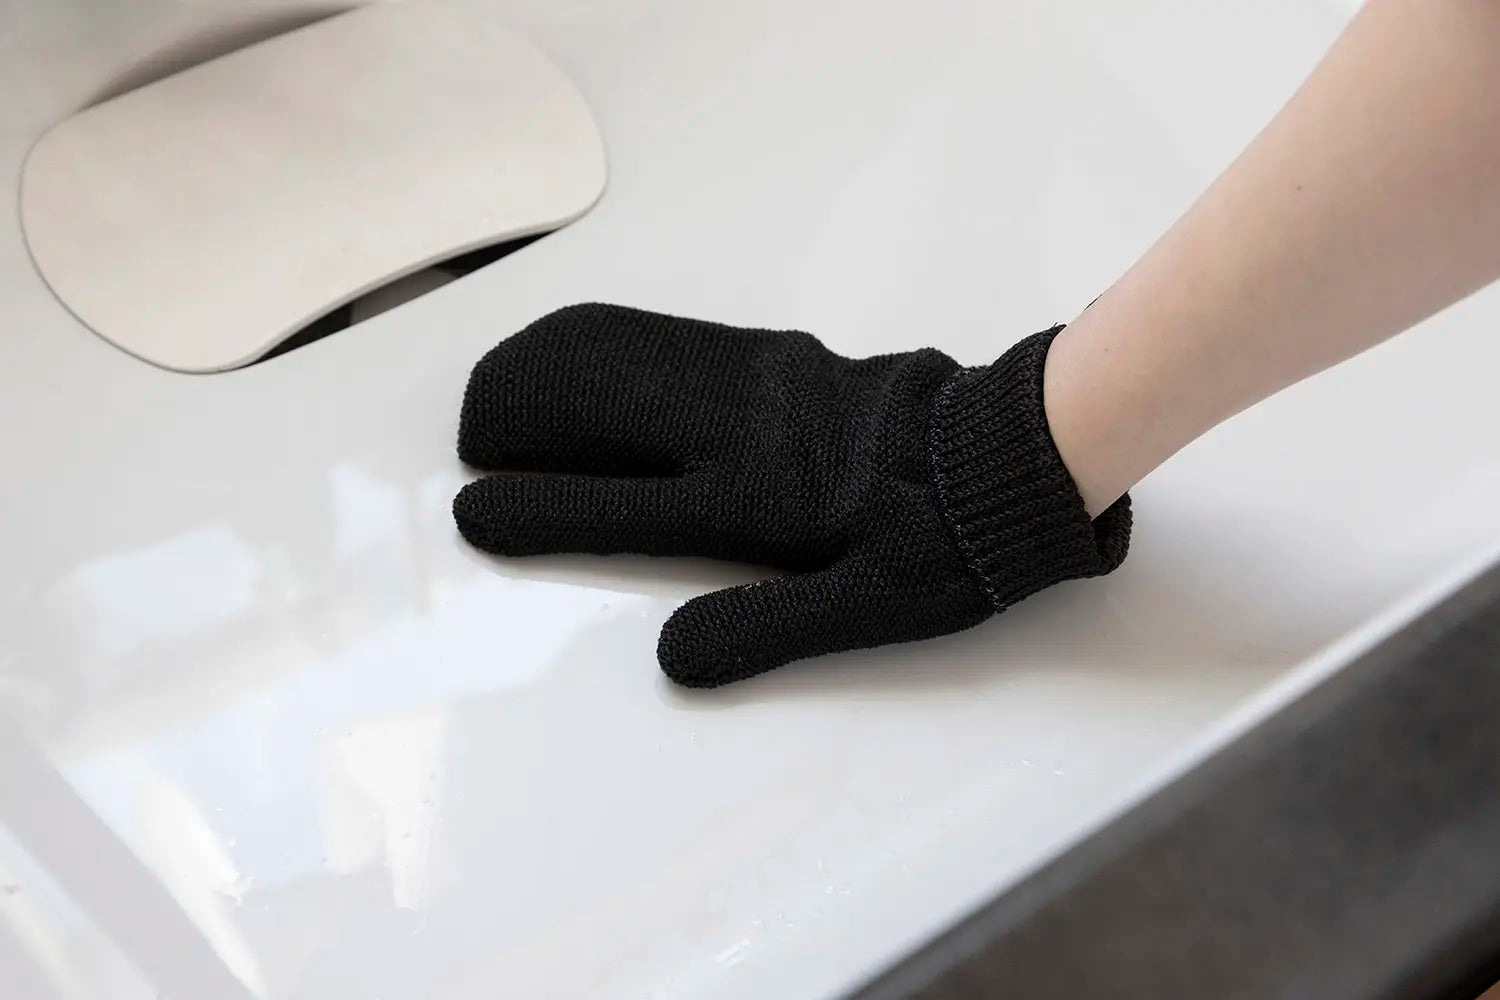 SANBELM scrubbing glove in kitchen sink